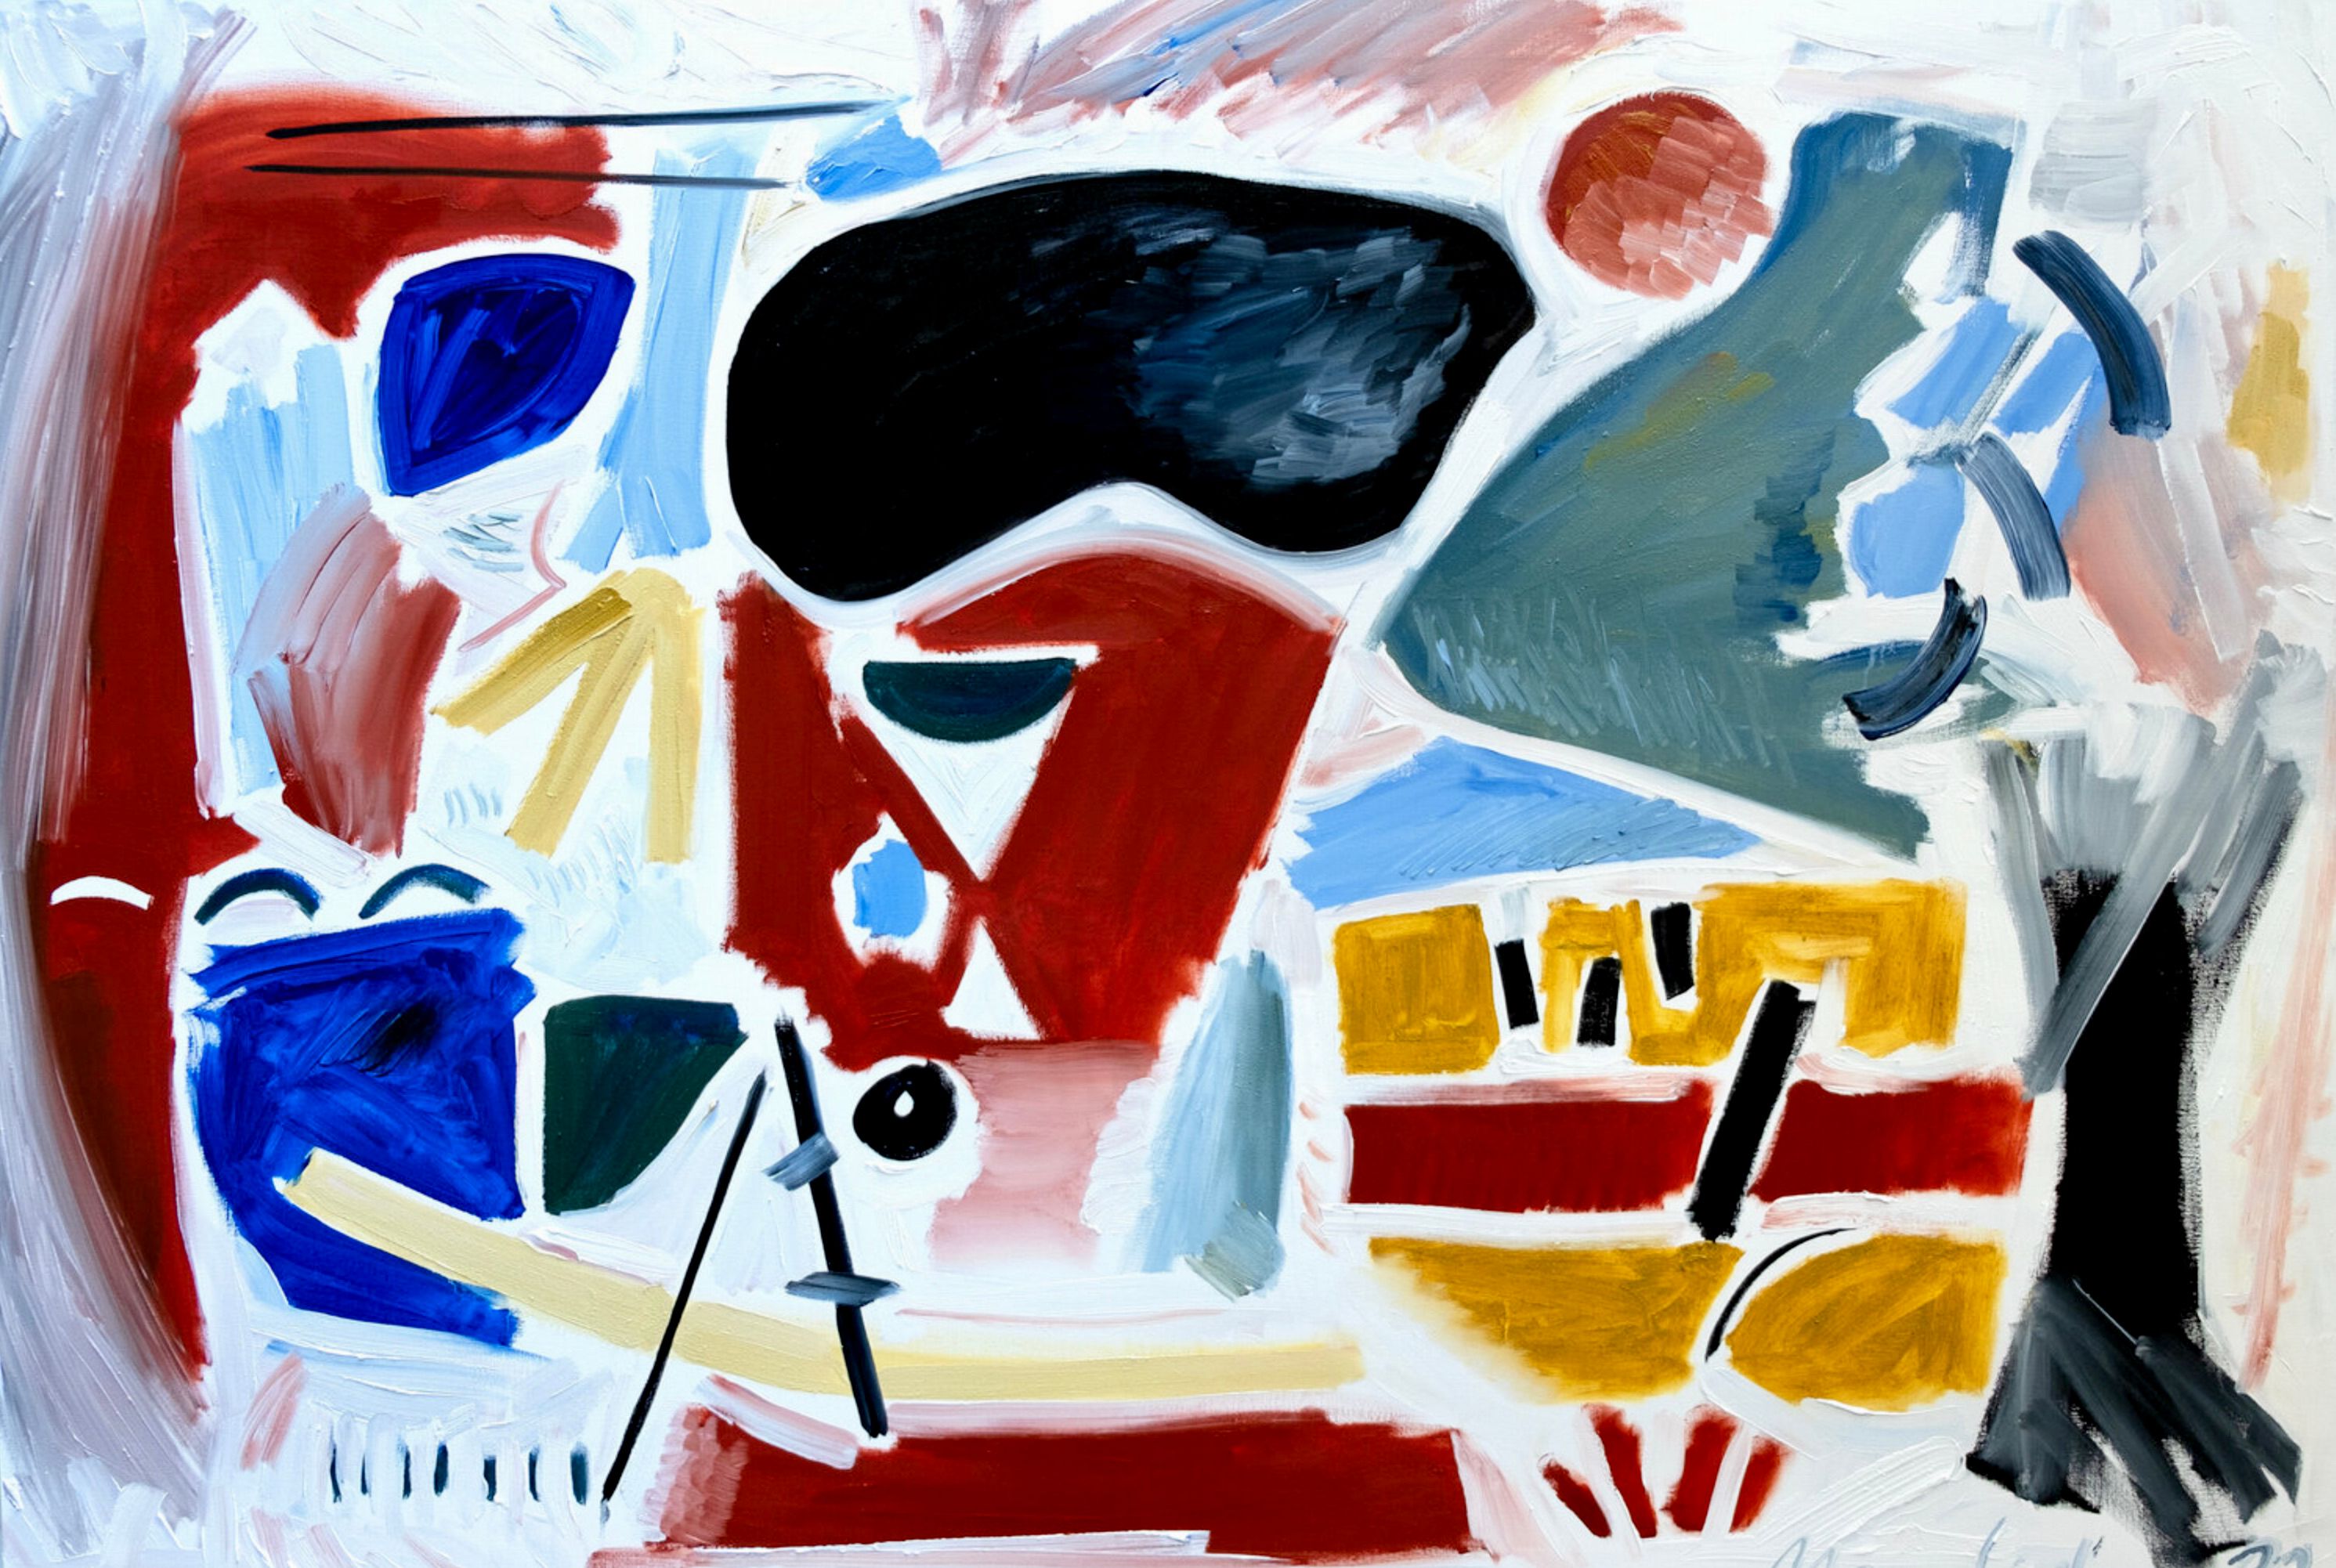 MECESLA Maciej Cieśla, "Paisaje abstracto", Pintura abstracta de colores sobre lienzo